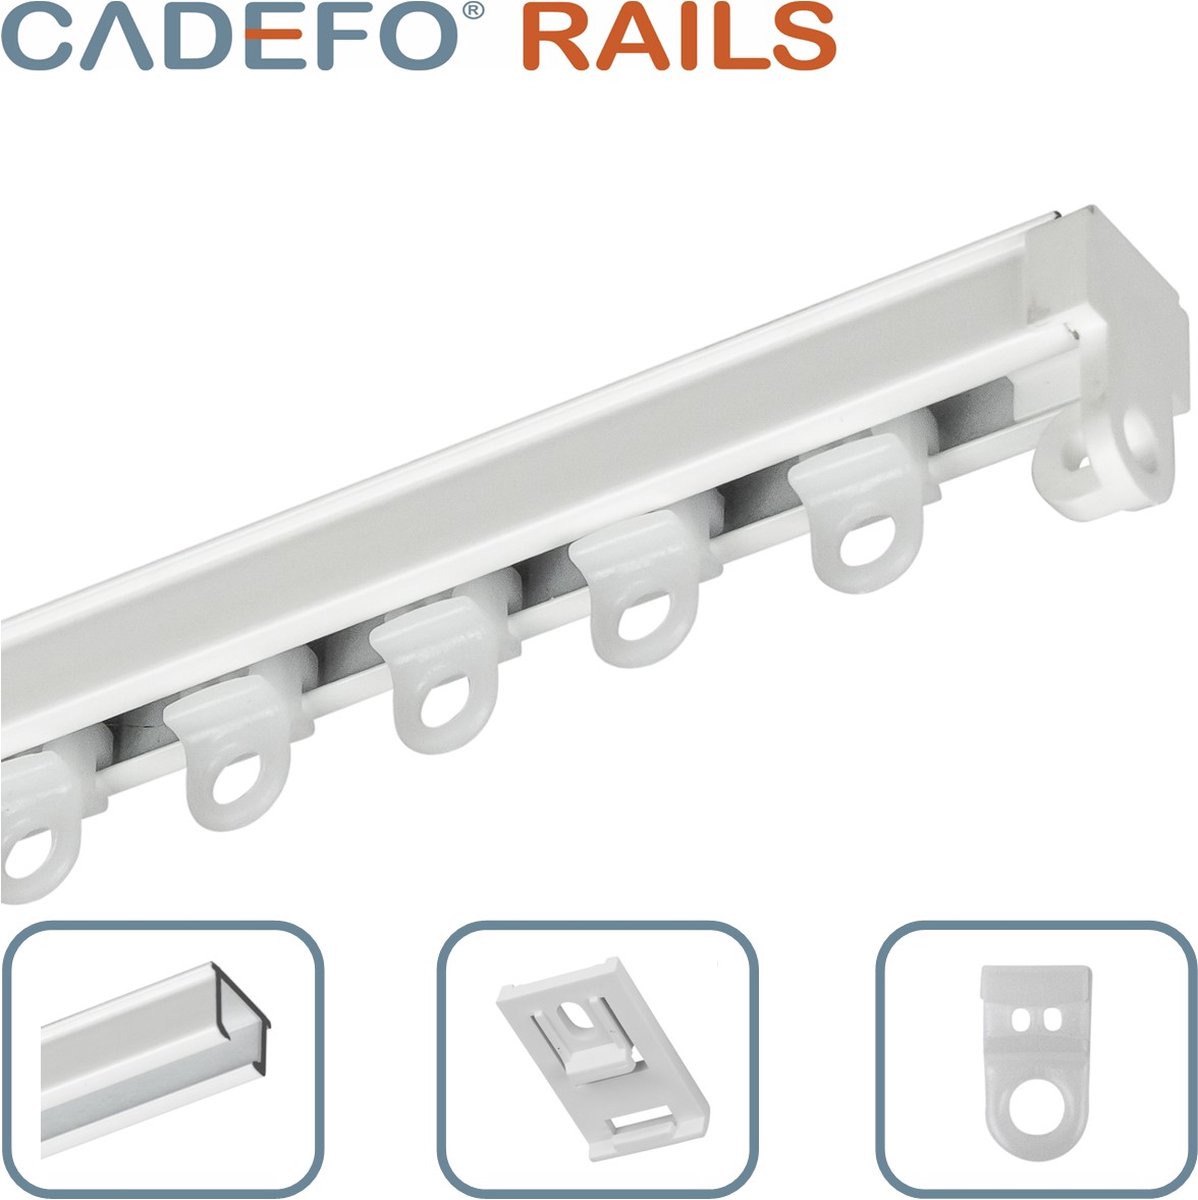 CADEFO RAILS (101 - 150 cm) Gordijnrails - Compleet op maat! - UIT 1 STUK - Leverbaar tot 6 meter - Plafondbevestiging - Lengte 108 cm